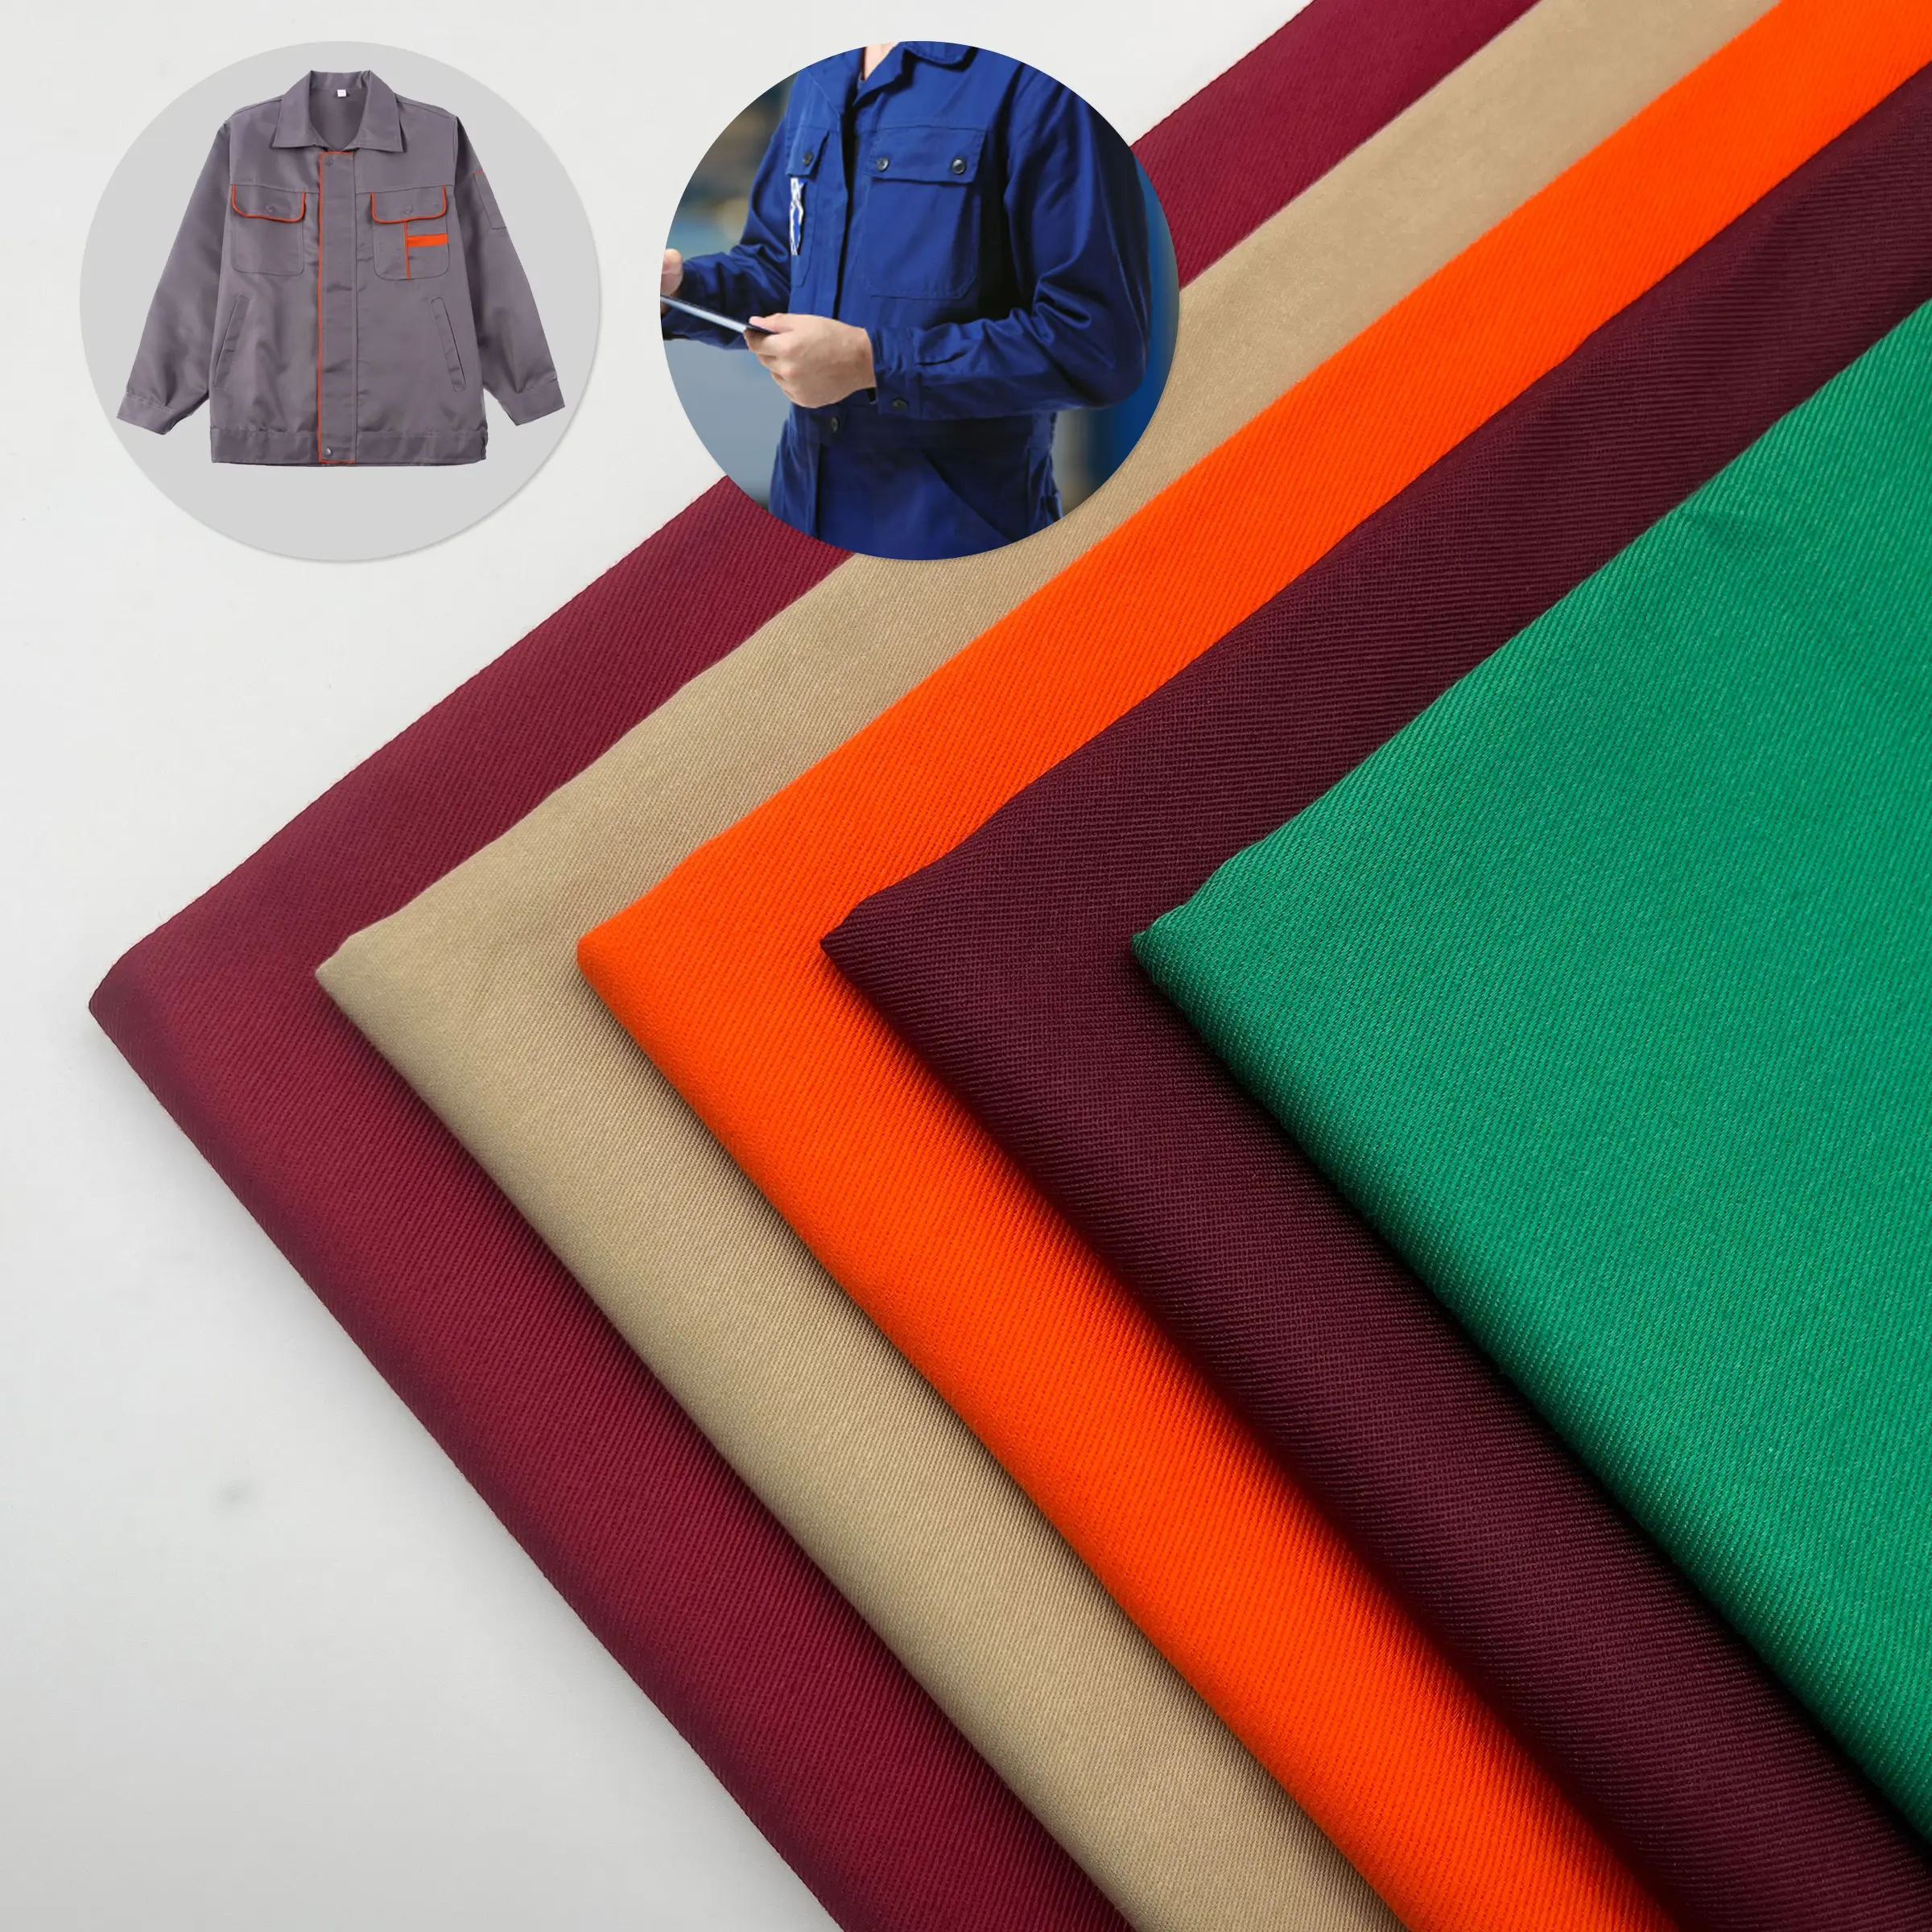 Woven Twill TC polycotton industrial workwear poliéster/algodão tecidos têxteis para vestuário fabricação fornecedor atacado